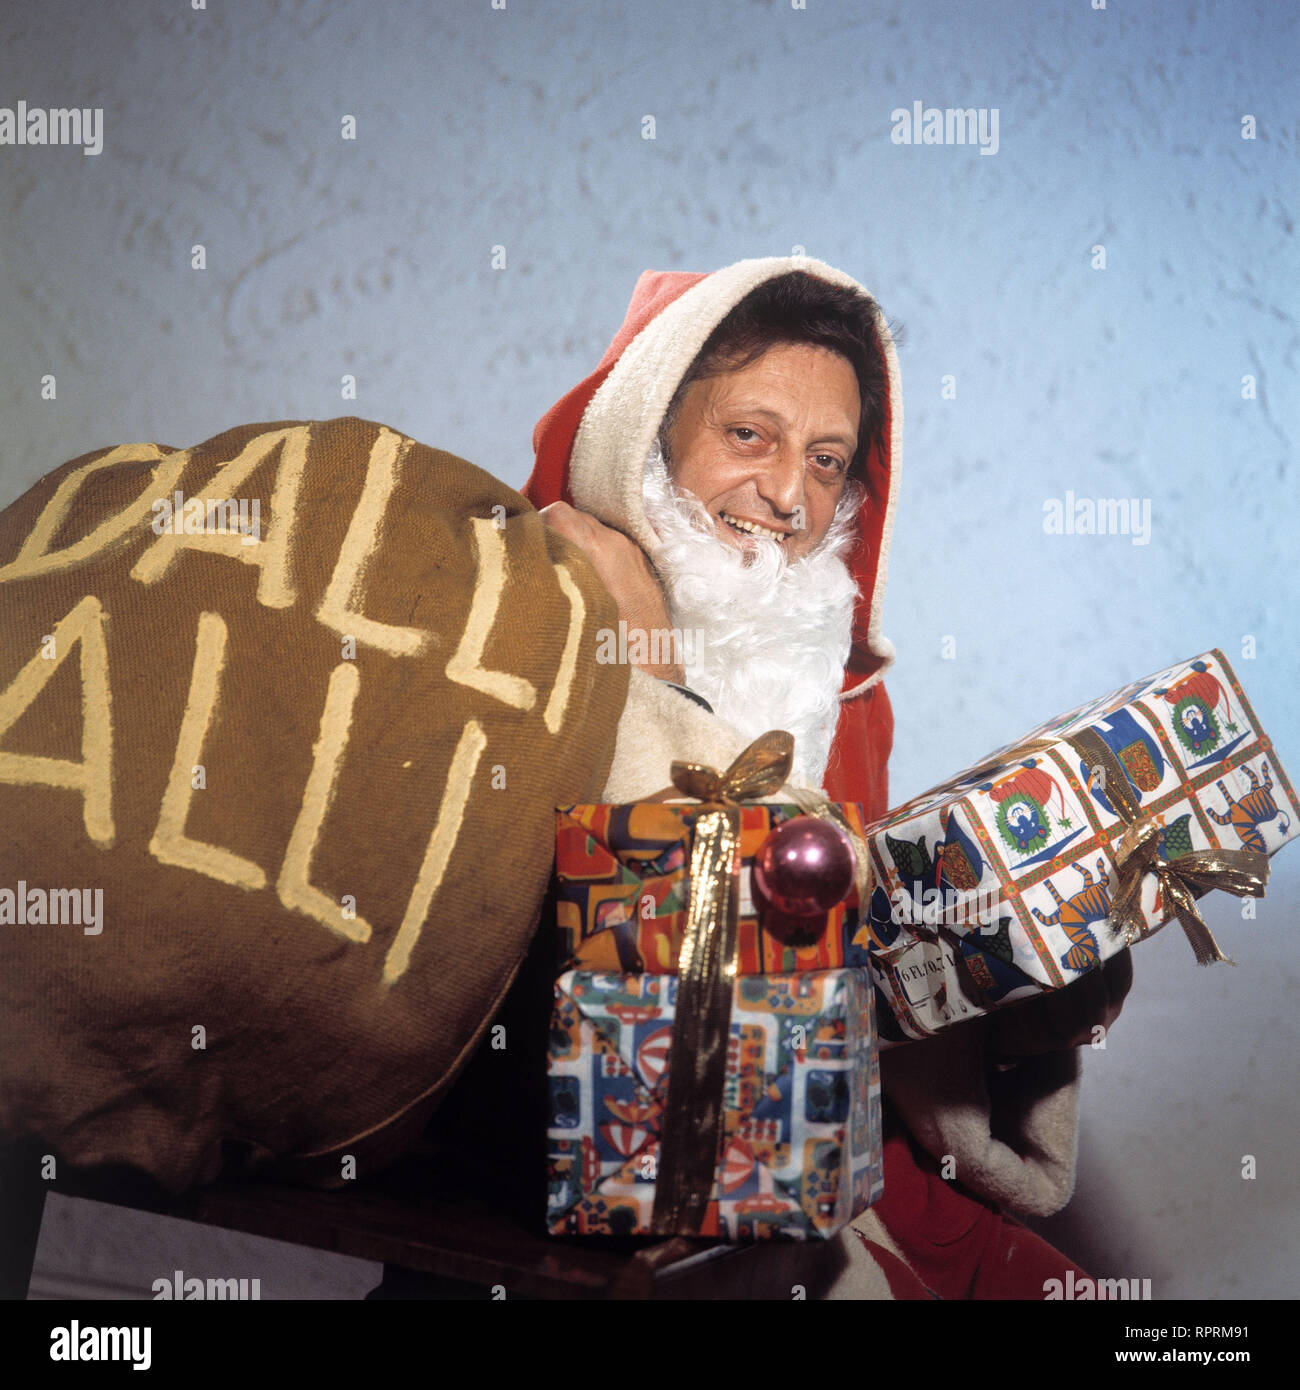 DALLI DALLI / Moderator HANS ROSENTHAL als Weihnachtsmann (5.11.1974) Grimm667 Stock Photo